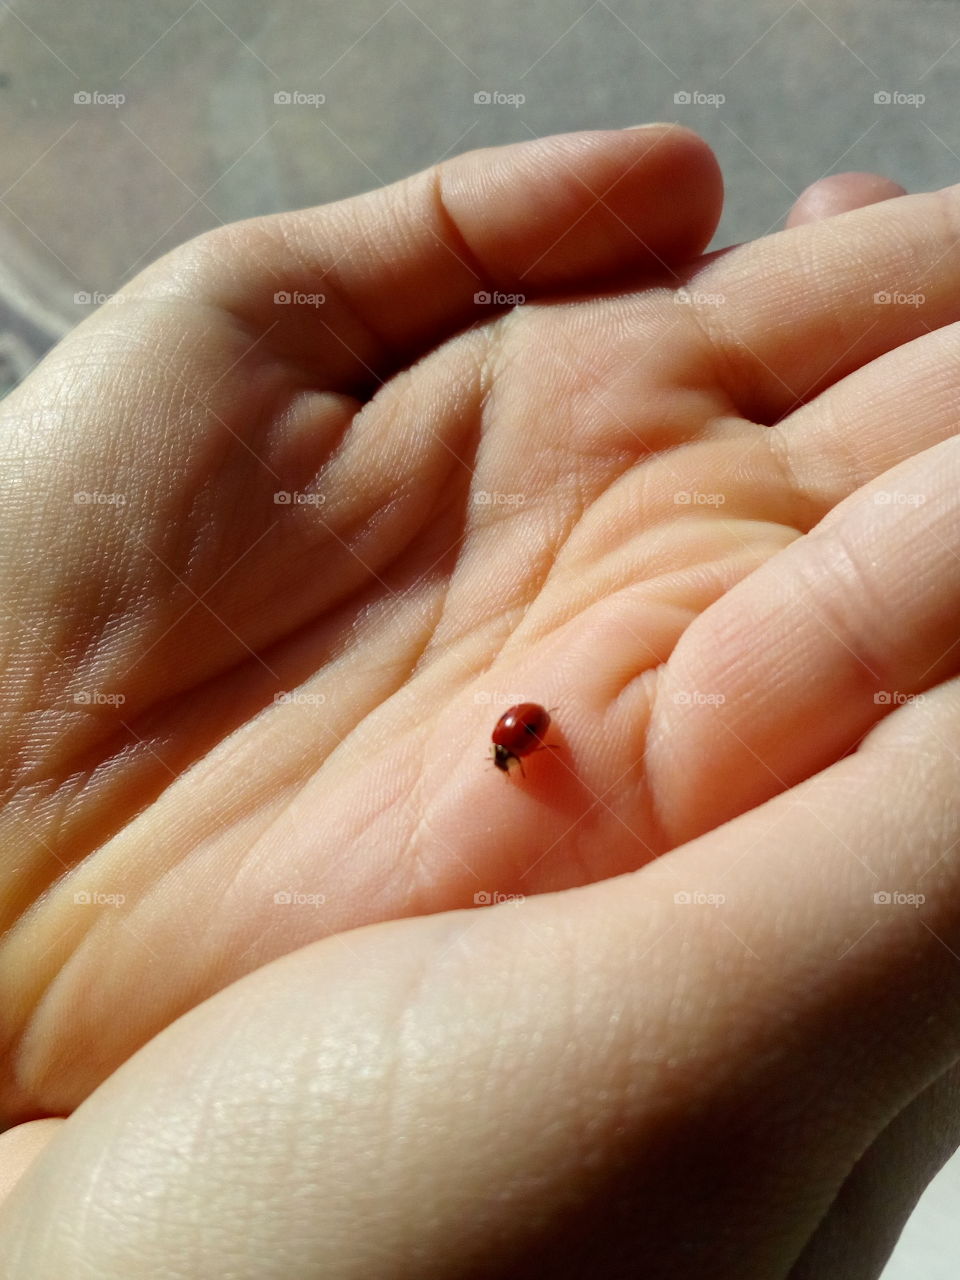 Holding a ladybug